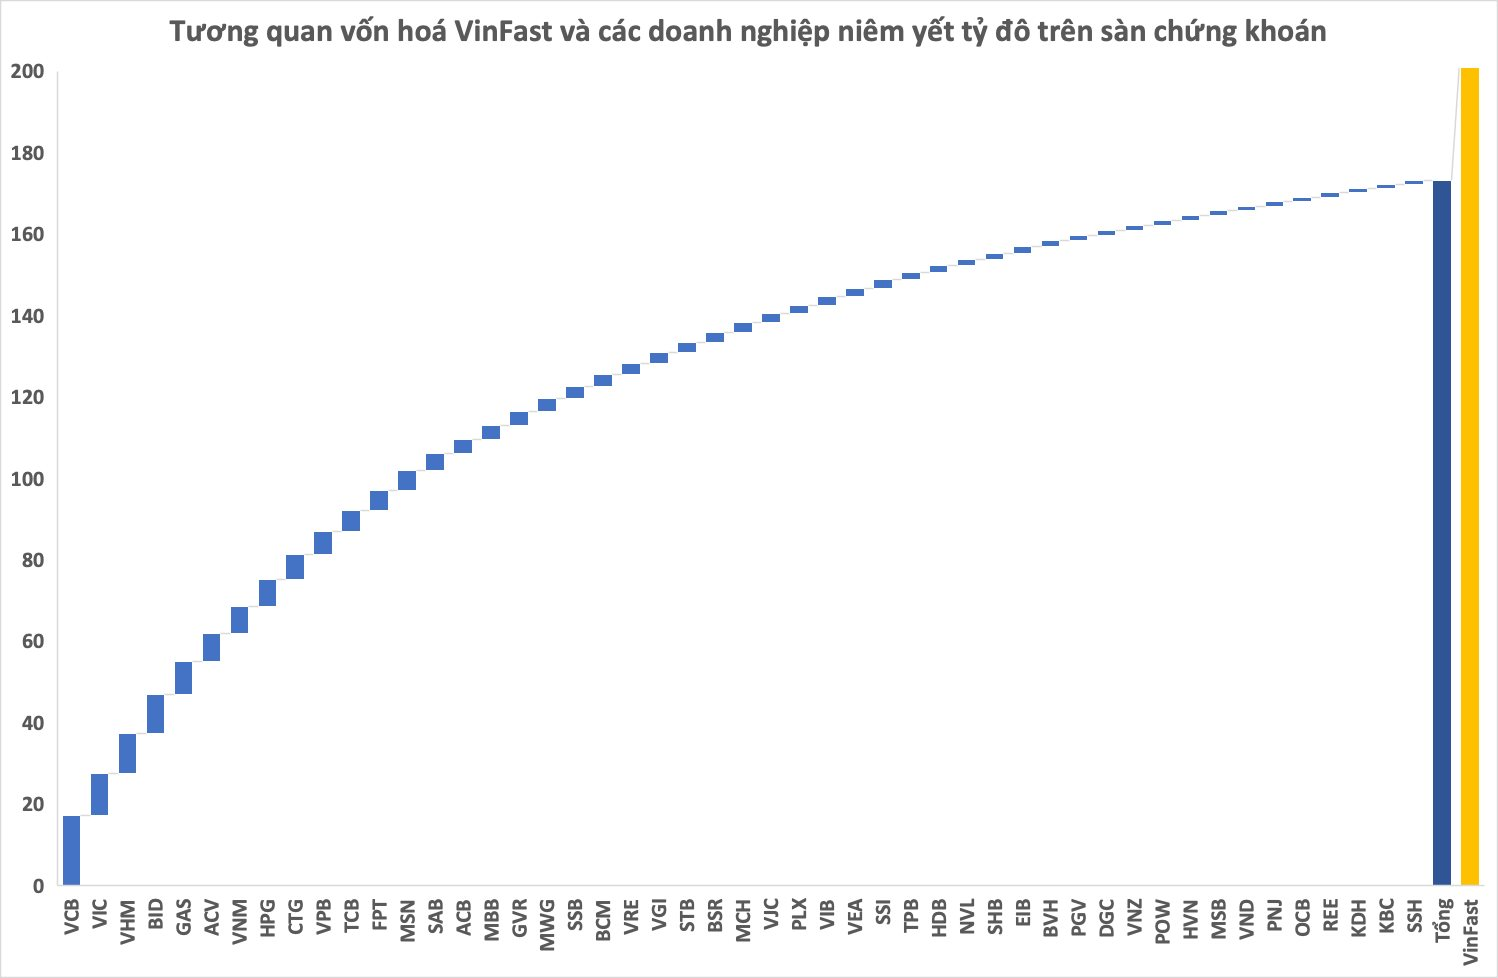 Cổ phiếu VinFast có thời điểm sát mốc 90 USD trong phiên 28/8, vốn hóa vượt tổng giá trị toàn bộ doanh nghiệp "tỷ đô" trên sàn chứng khoán Việt Nam - Ảnh 3.